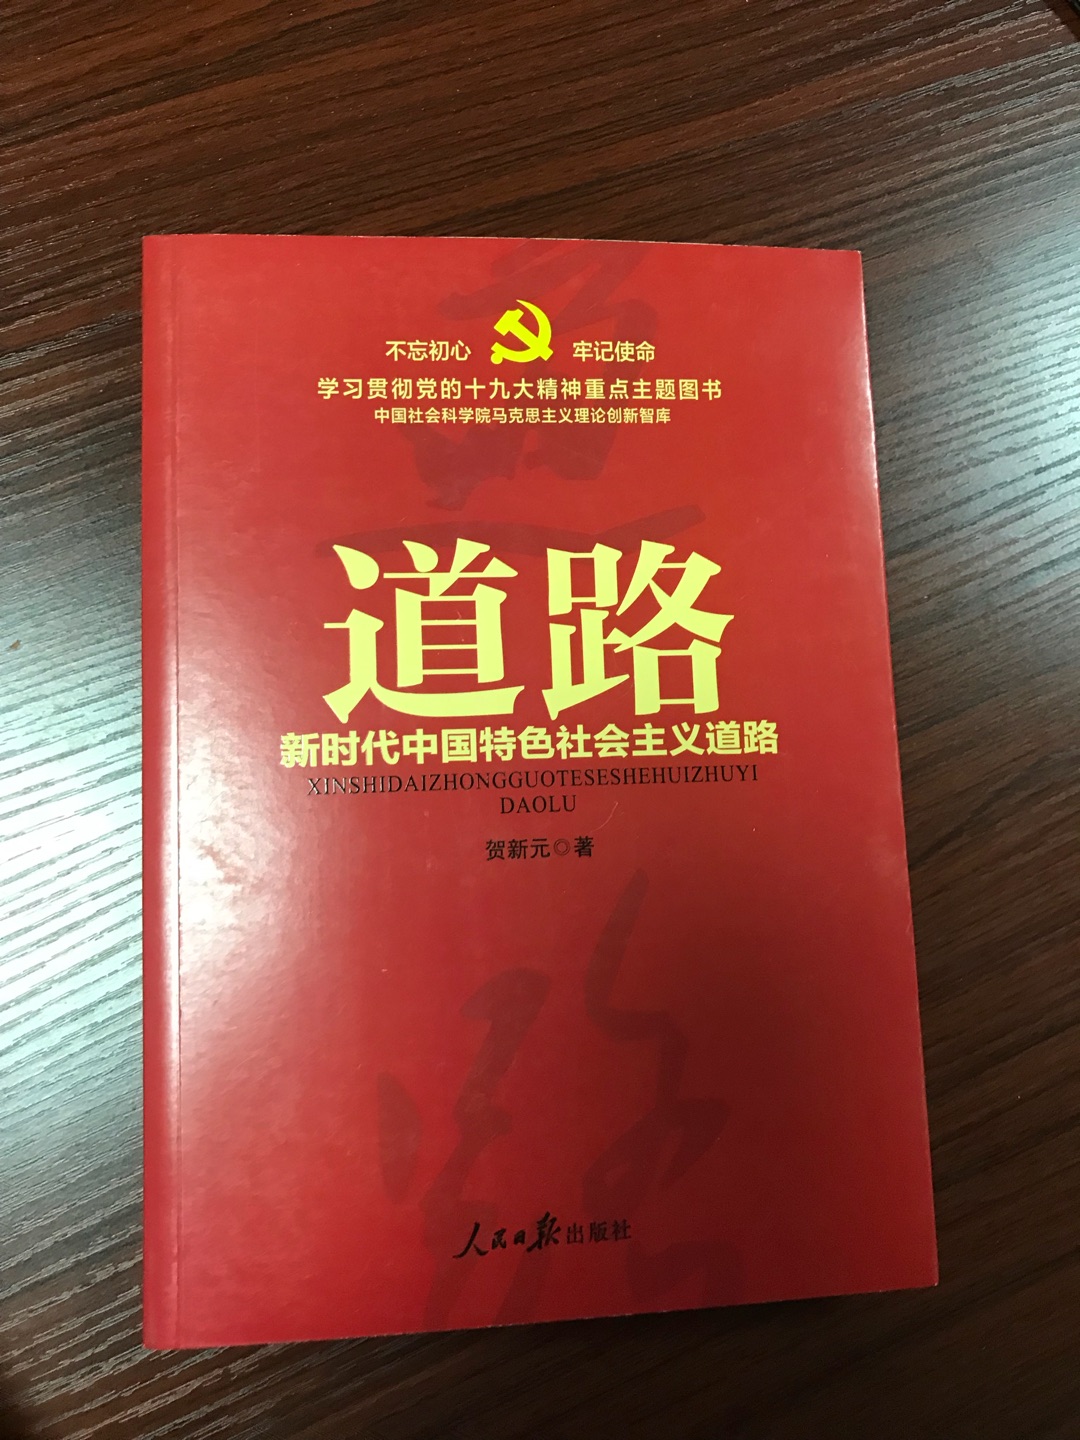 ????道路：新时代中国特色社会主义道路/学习贯彻党的十九大精神重点主题图书很好